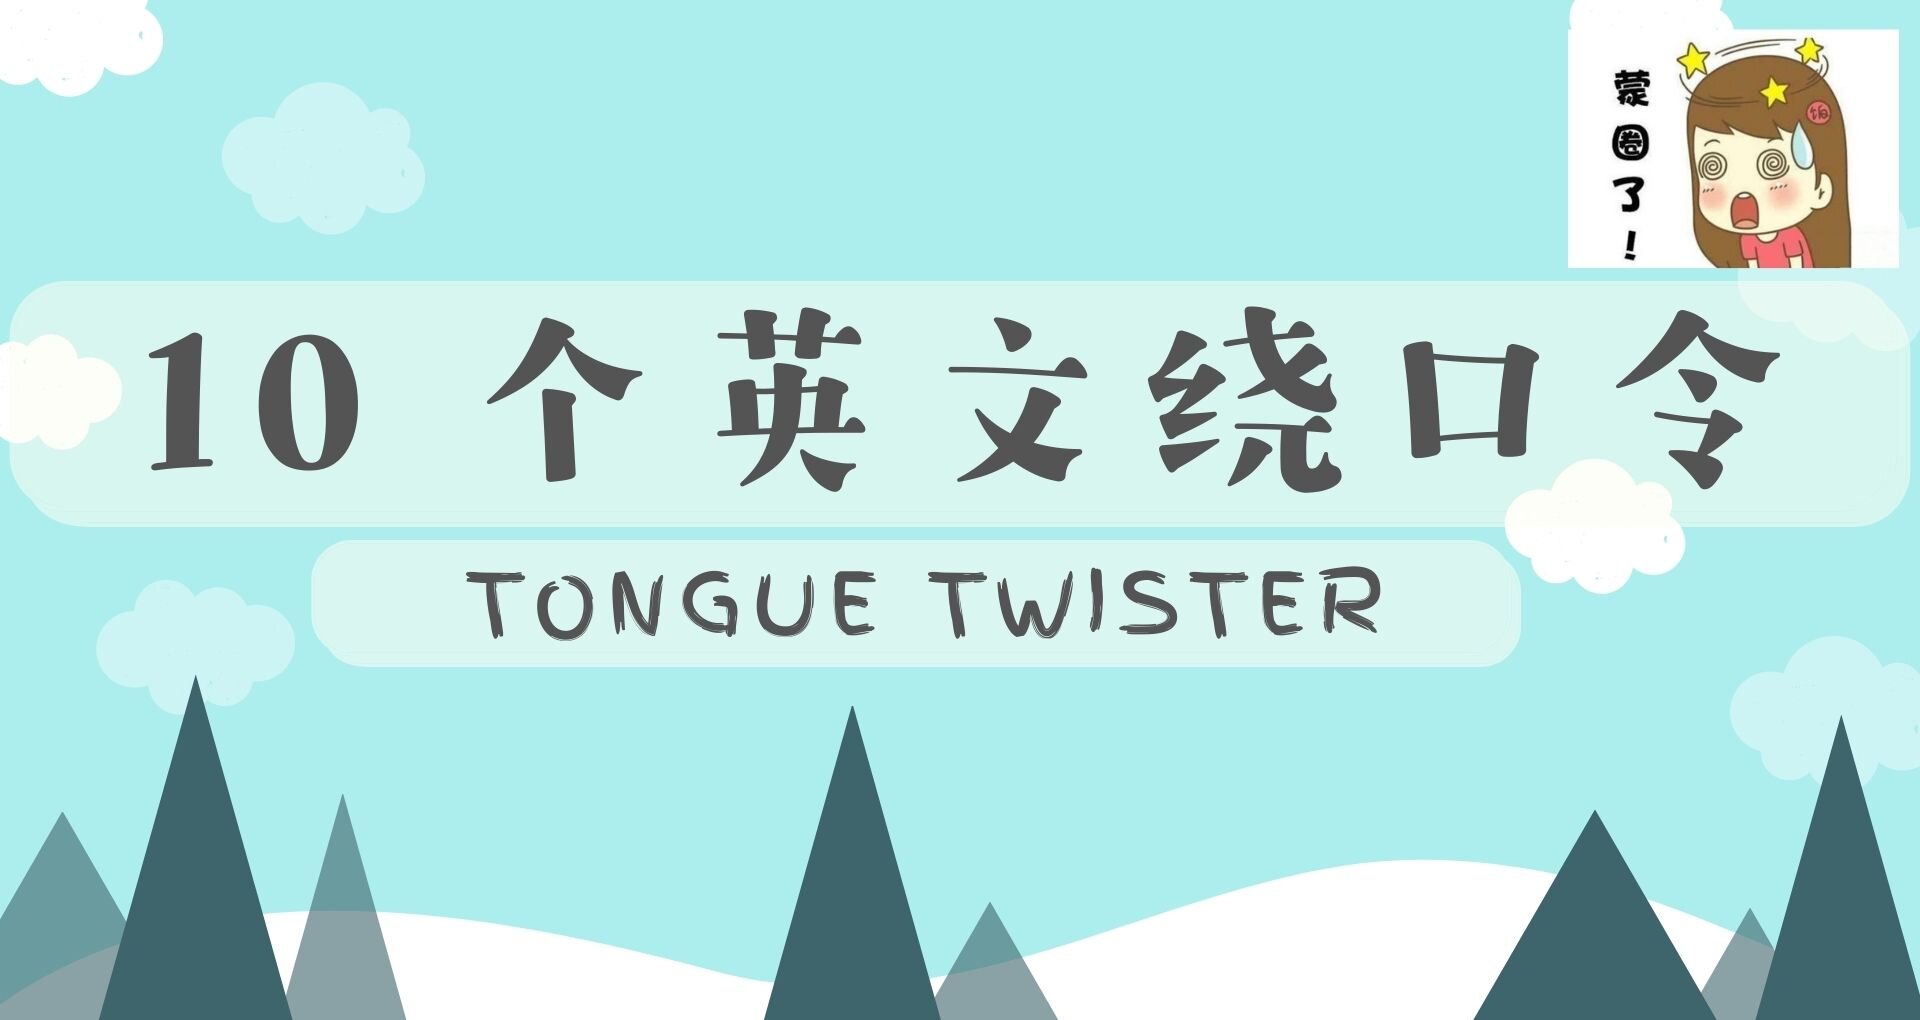 10个英文绕口令 (Tongue Twister)